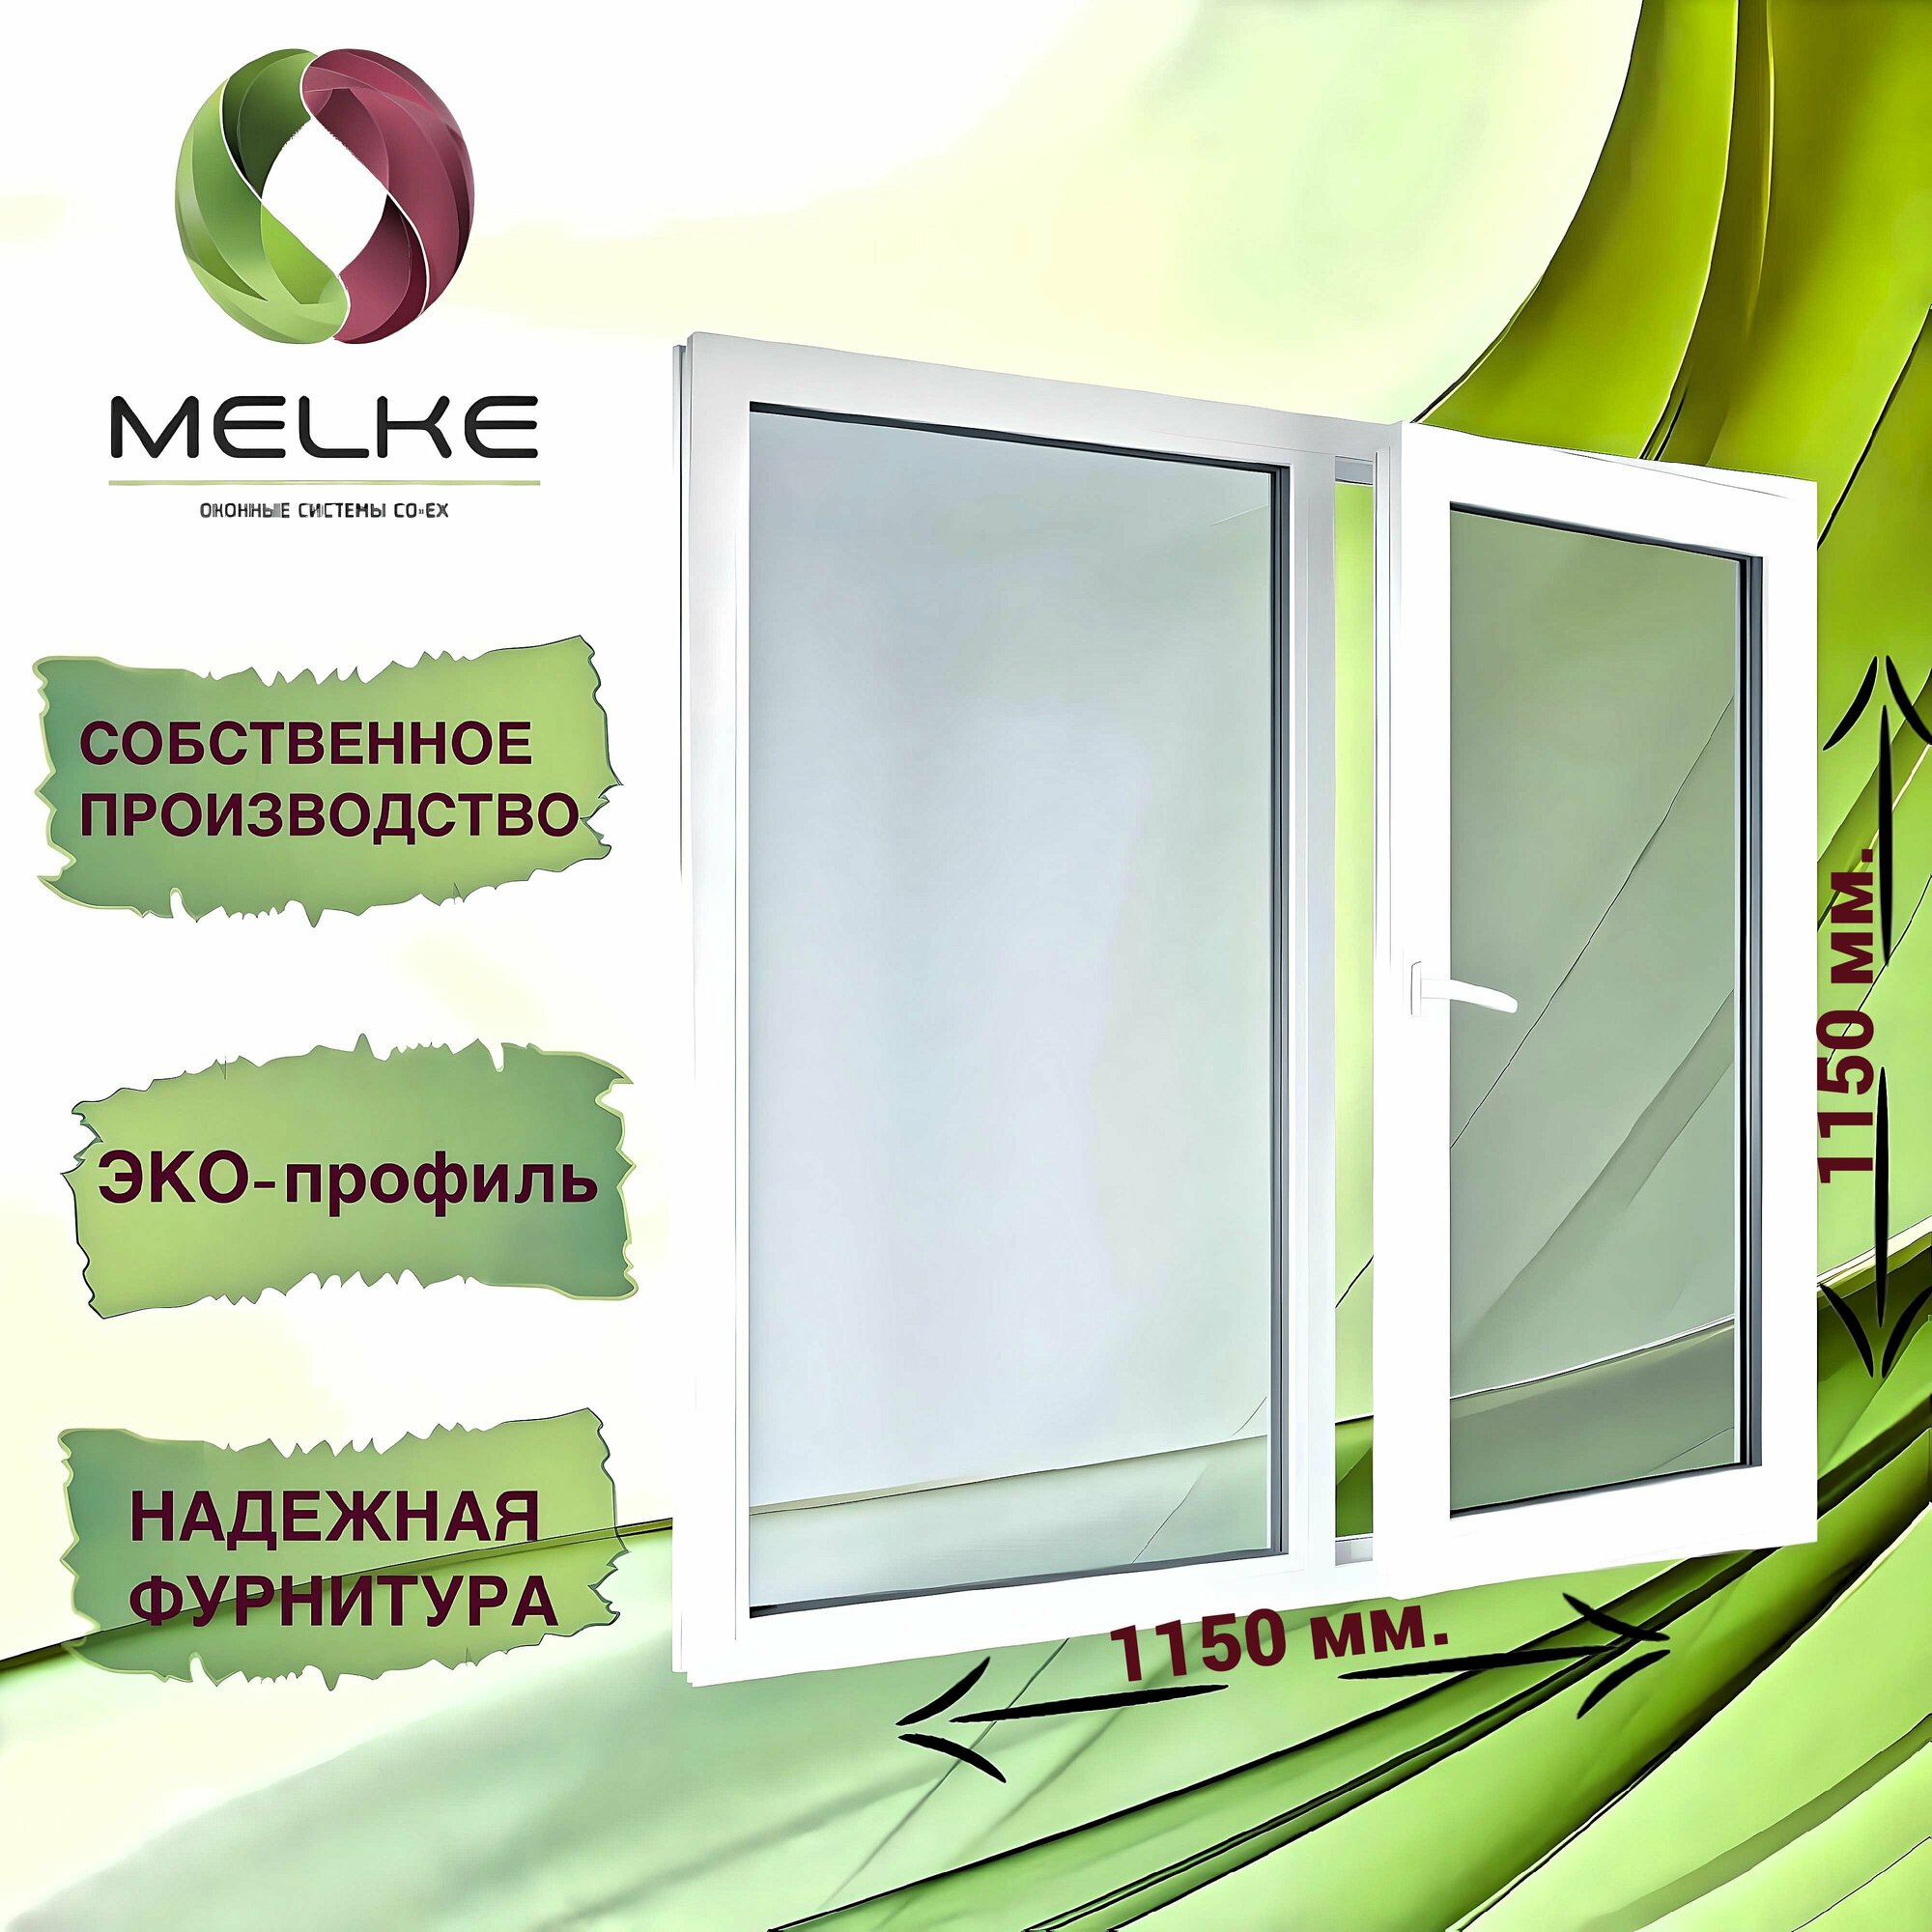 Окно 1150 x 1150 мм, профиль Melke 60 (Фурнитура FUTURUSS), двухстворчатое, с поворотно-откидной правой и глухой левой створками, 2-х камерный стеклопакет, 3 стекла